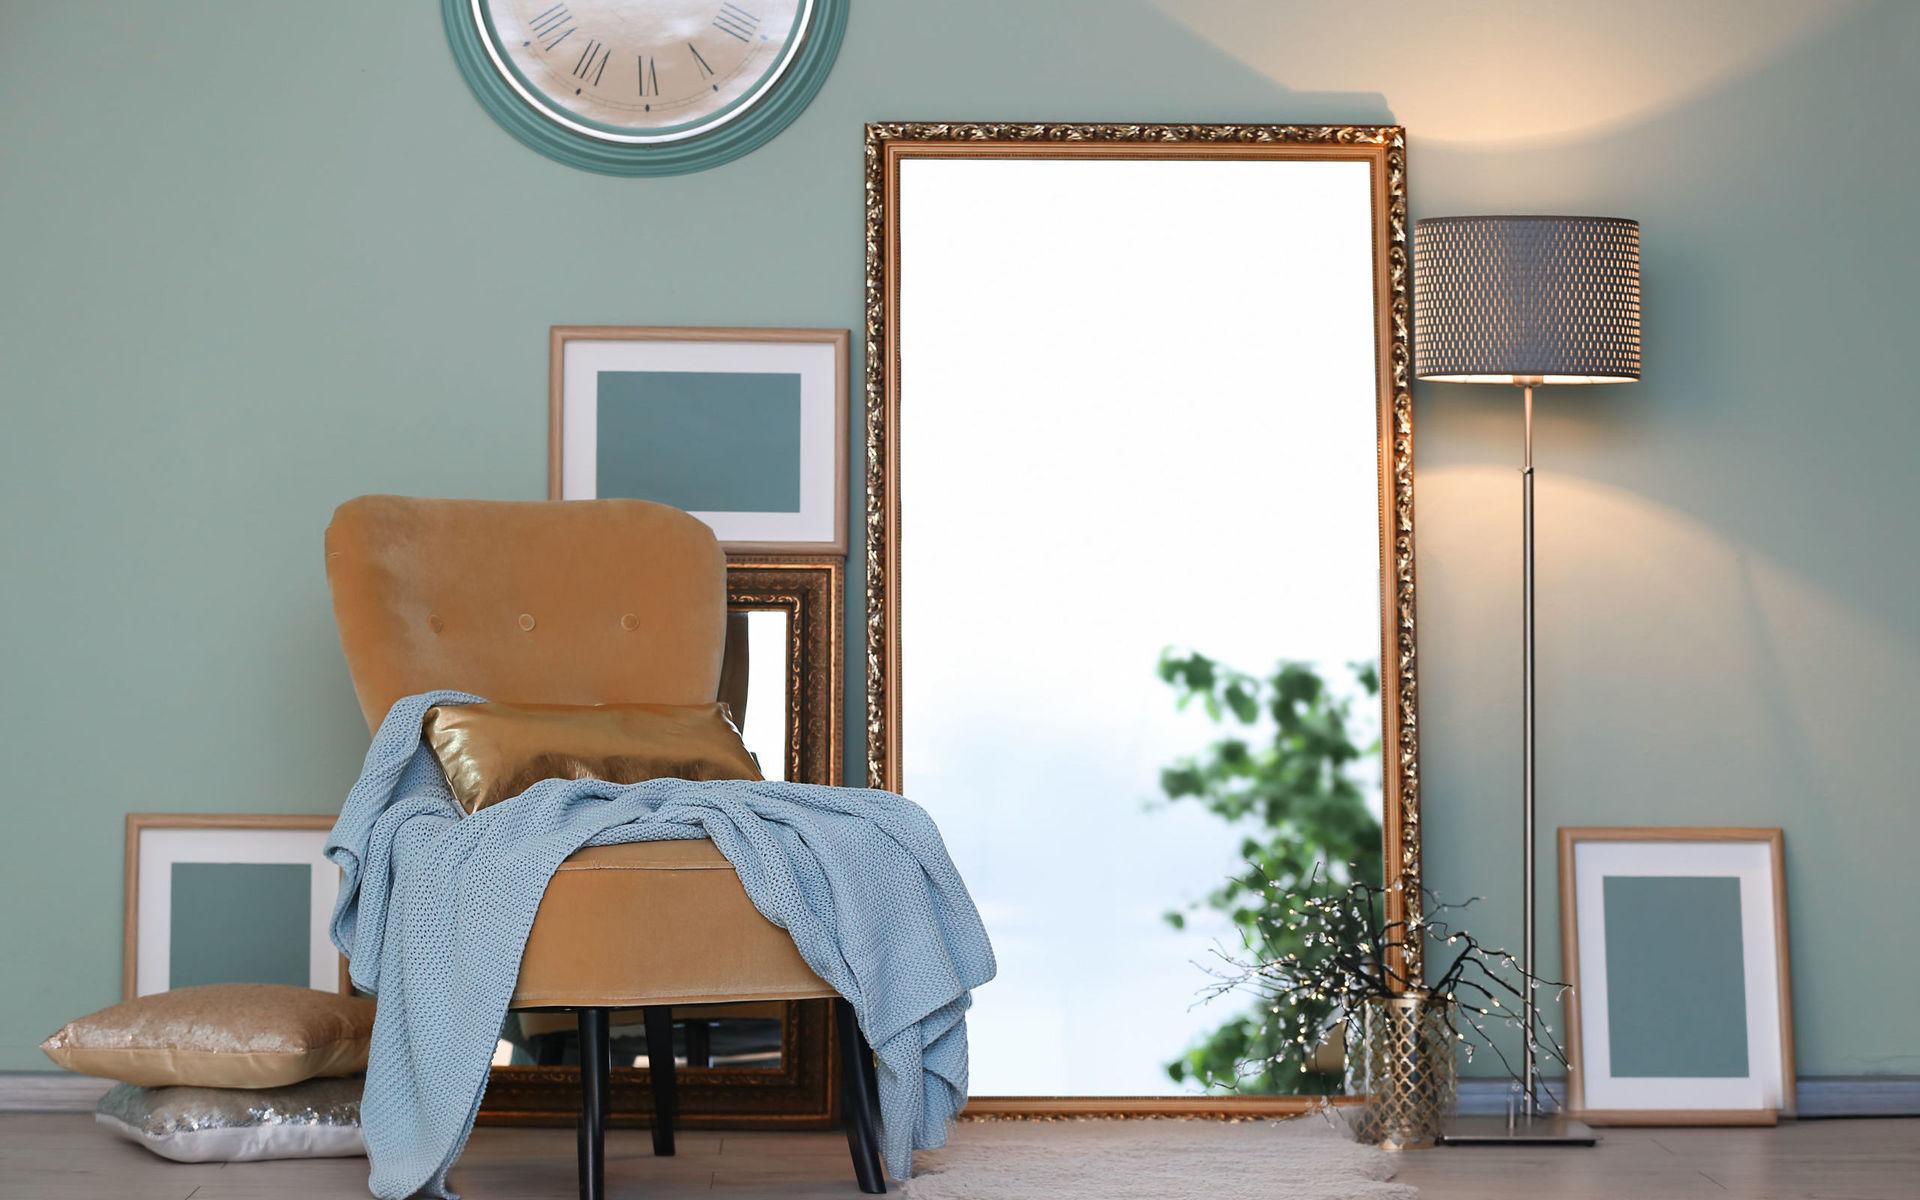 En stor guldspegel kan bli ett vackert inslag som lyfter ett helt rum. Stora speglar reflekterar dessutom mycket ljus.